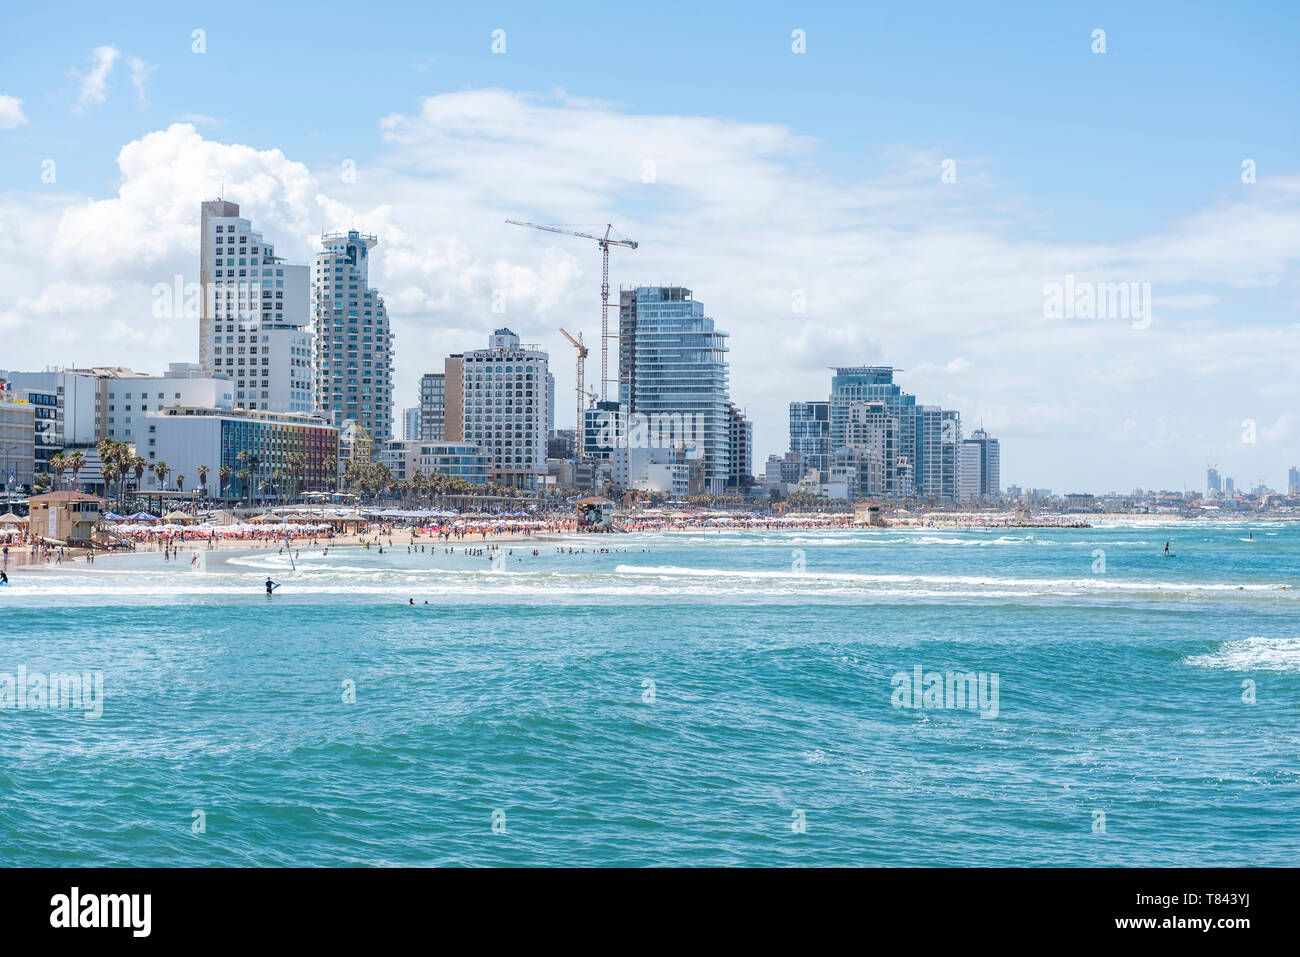 Israel, Tel Aviv-Yafo - 09 May 2019: Cityscape of Tel Aviv Stock Photo